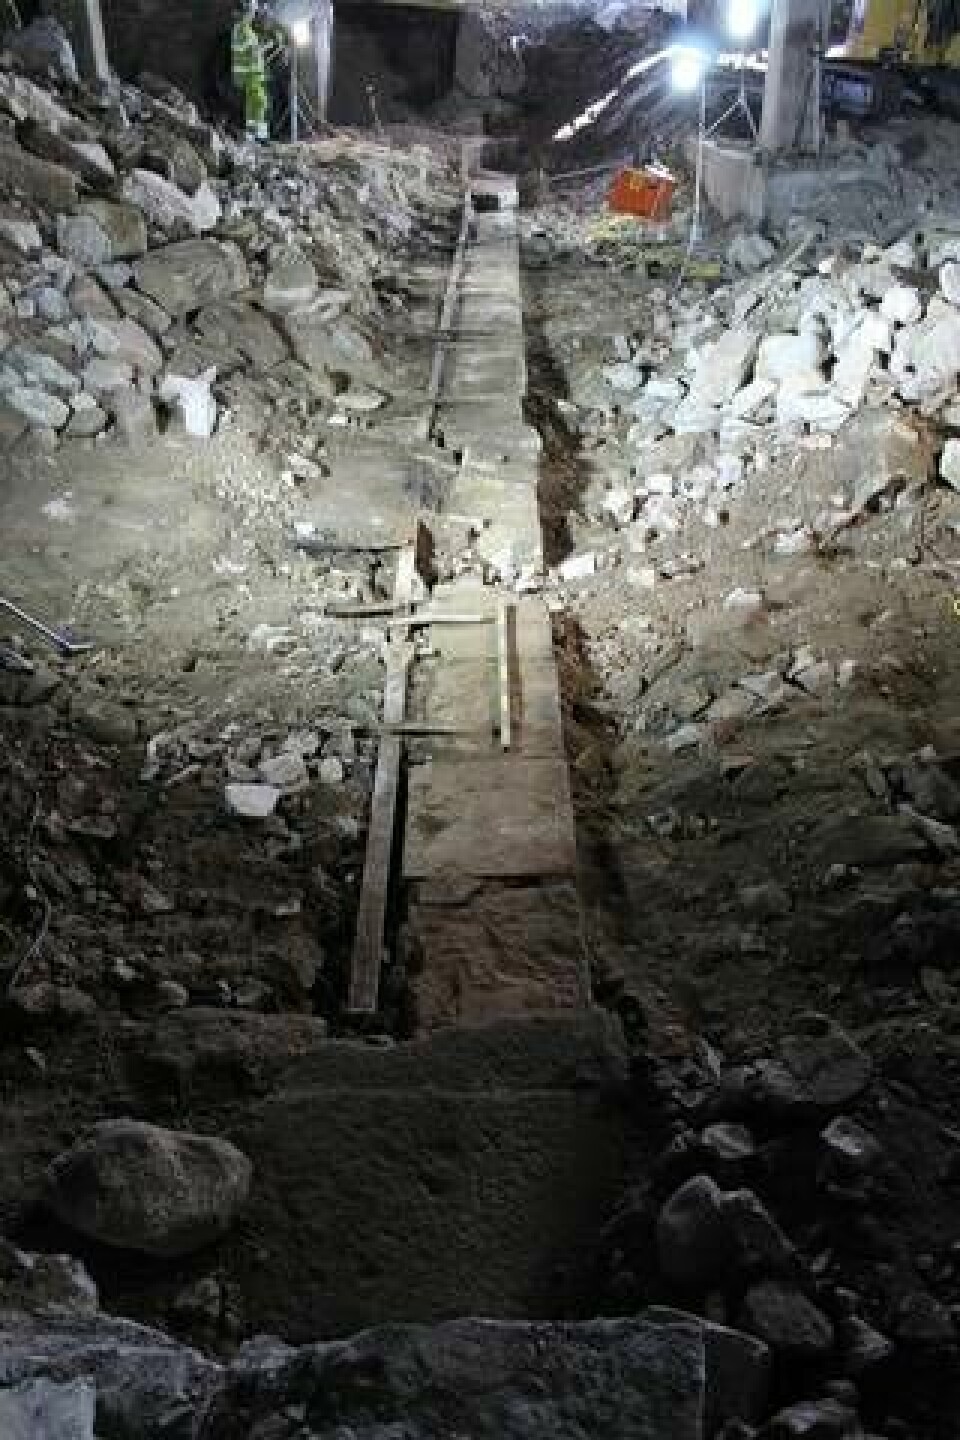 När utgrävningen nådde sitt slut syntes slussrännan, det som är kärnan av Christopher Polhems konstruktion, tydligt. Foto: Arkeologikonsult